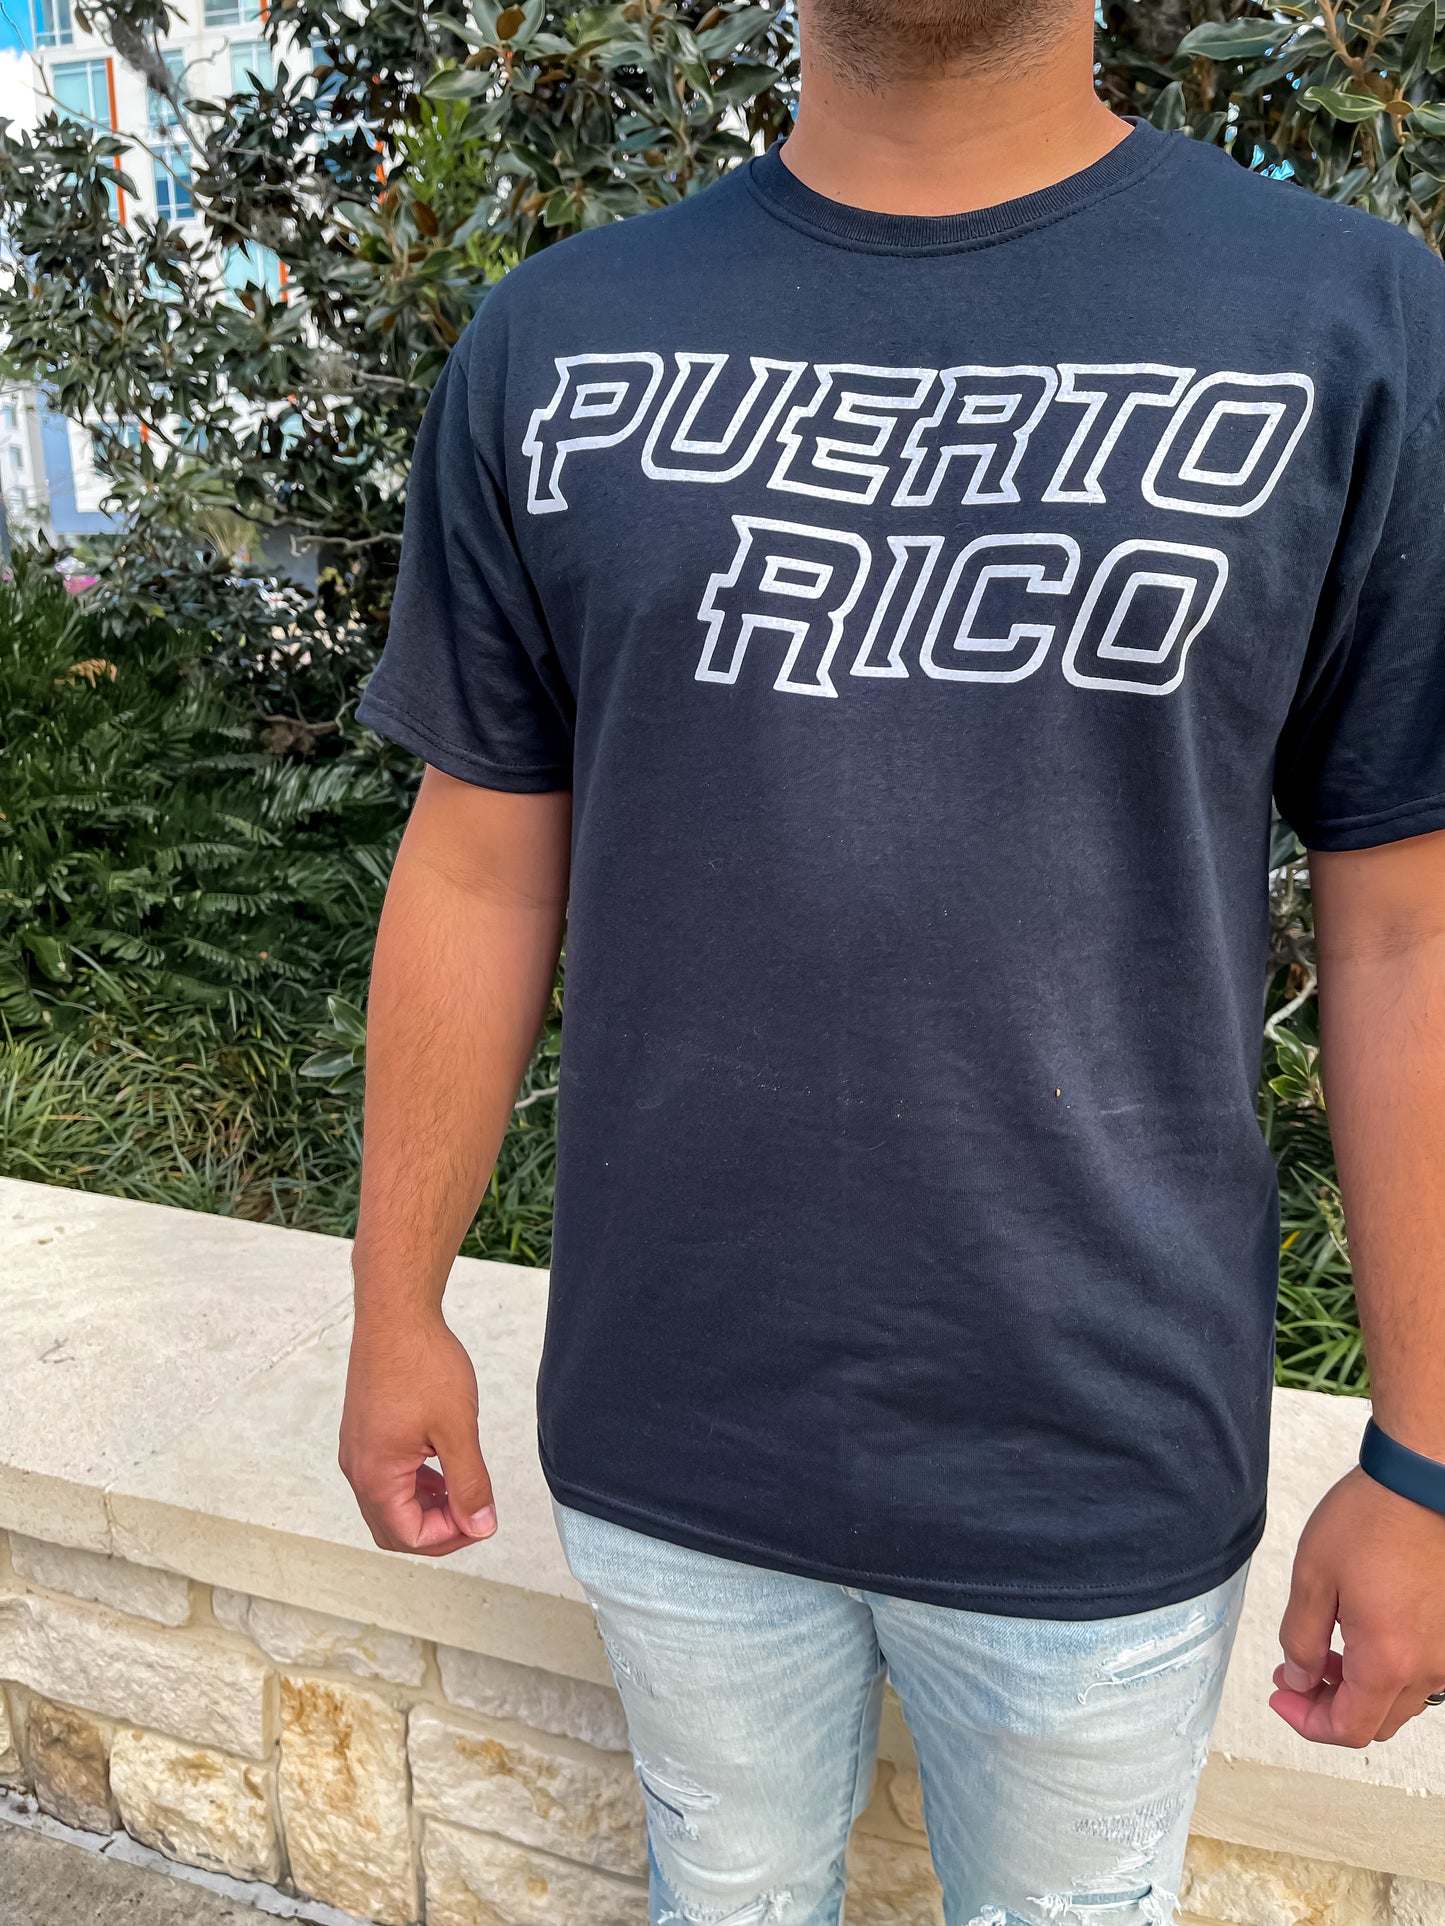 Puerto Rico Boricua Shirt